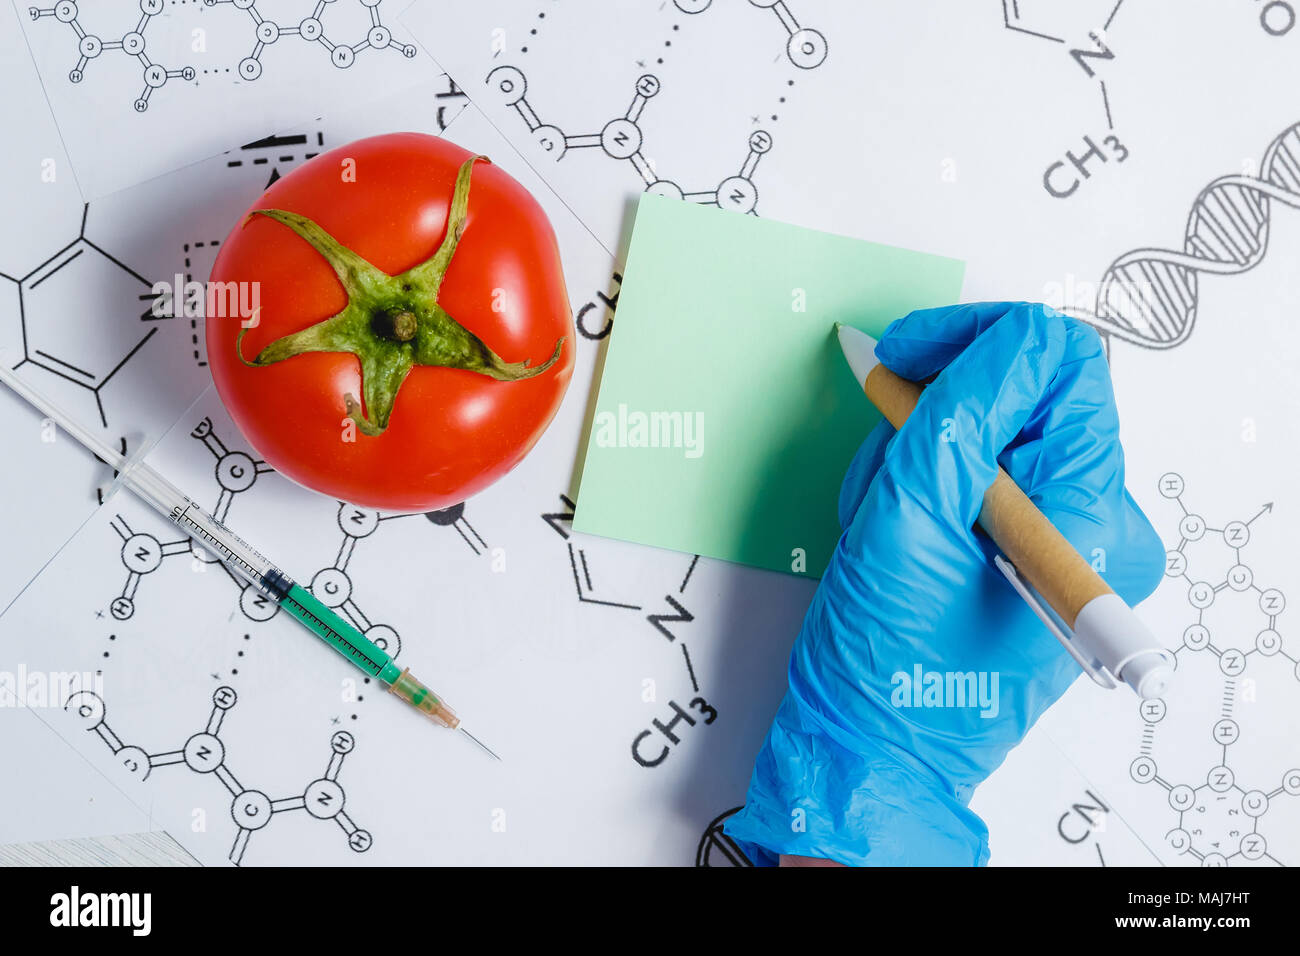 Notez scientifique OGM, un liquide vert dans la seringue, Rouge tomate - Genetically Modified Food Concept. Banque D'Images